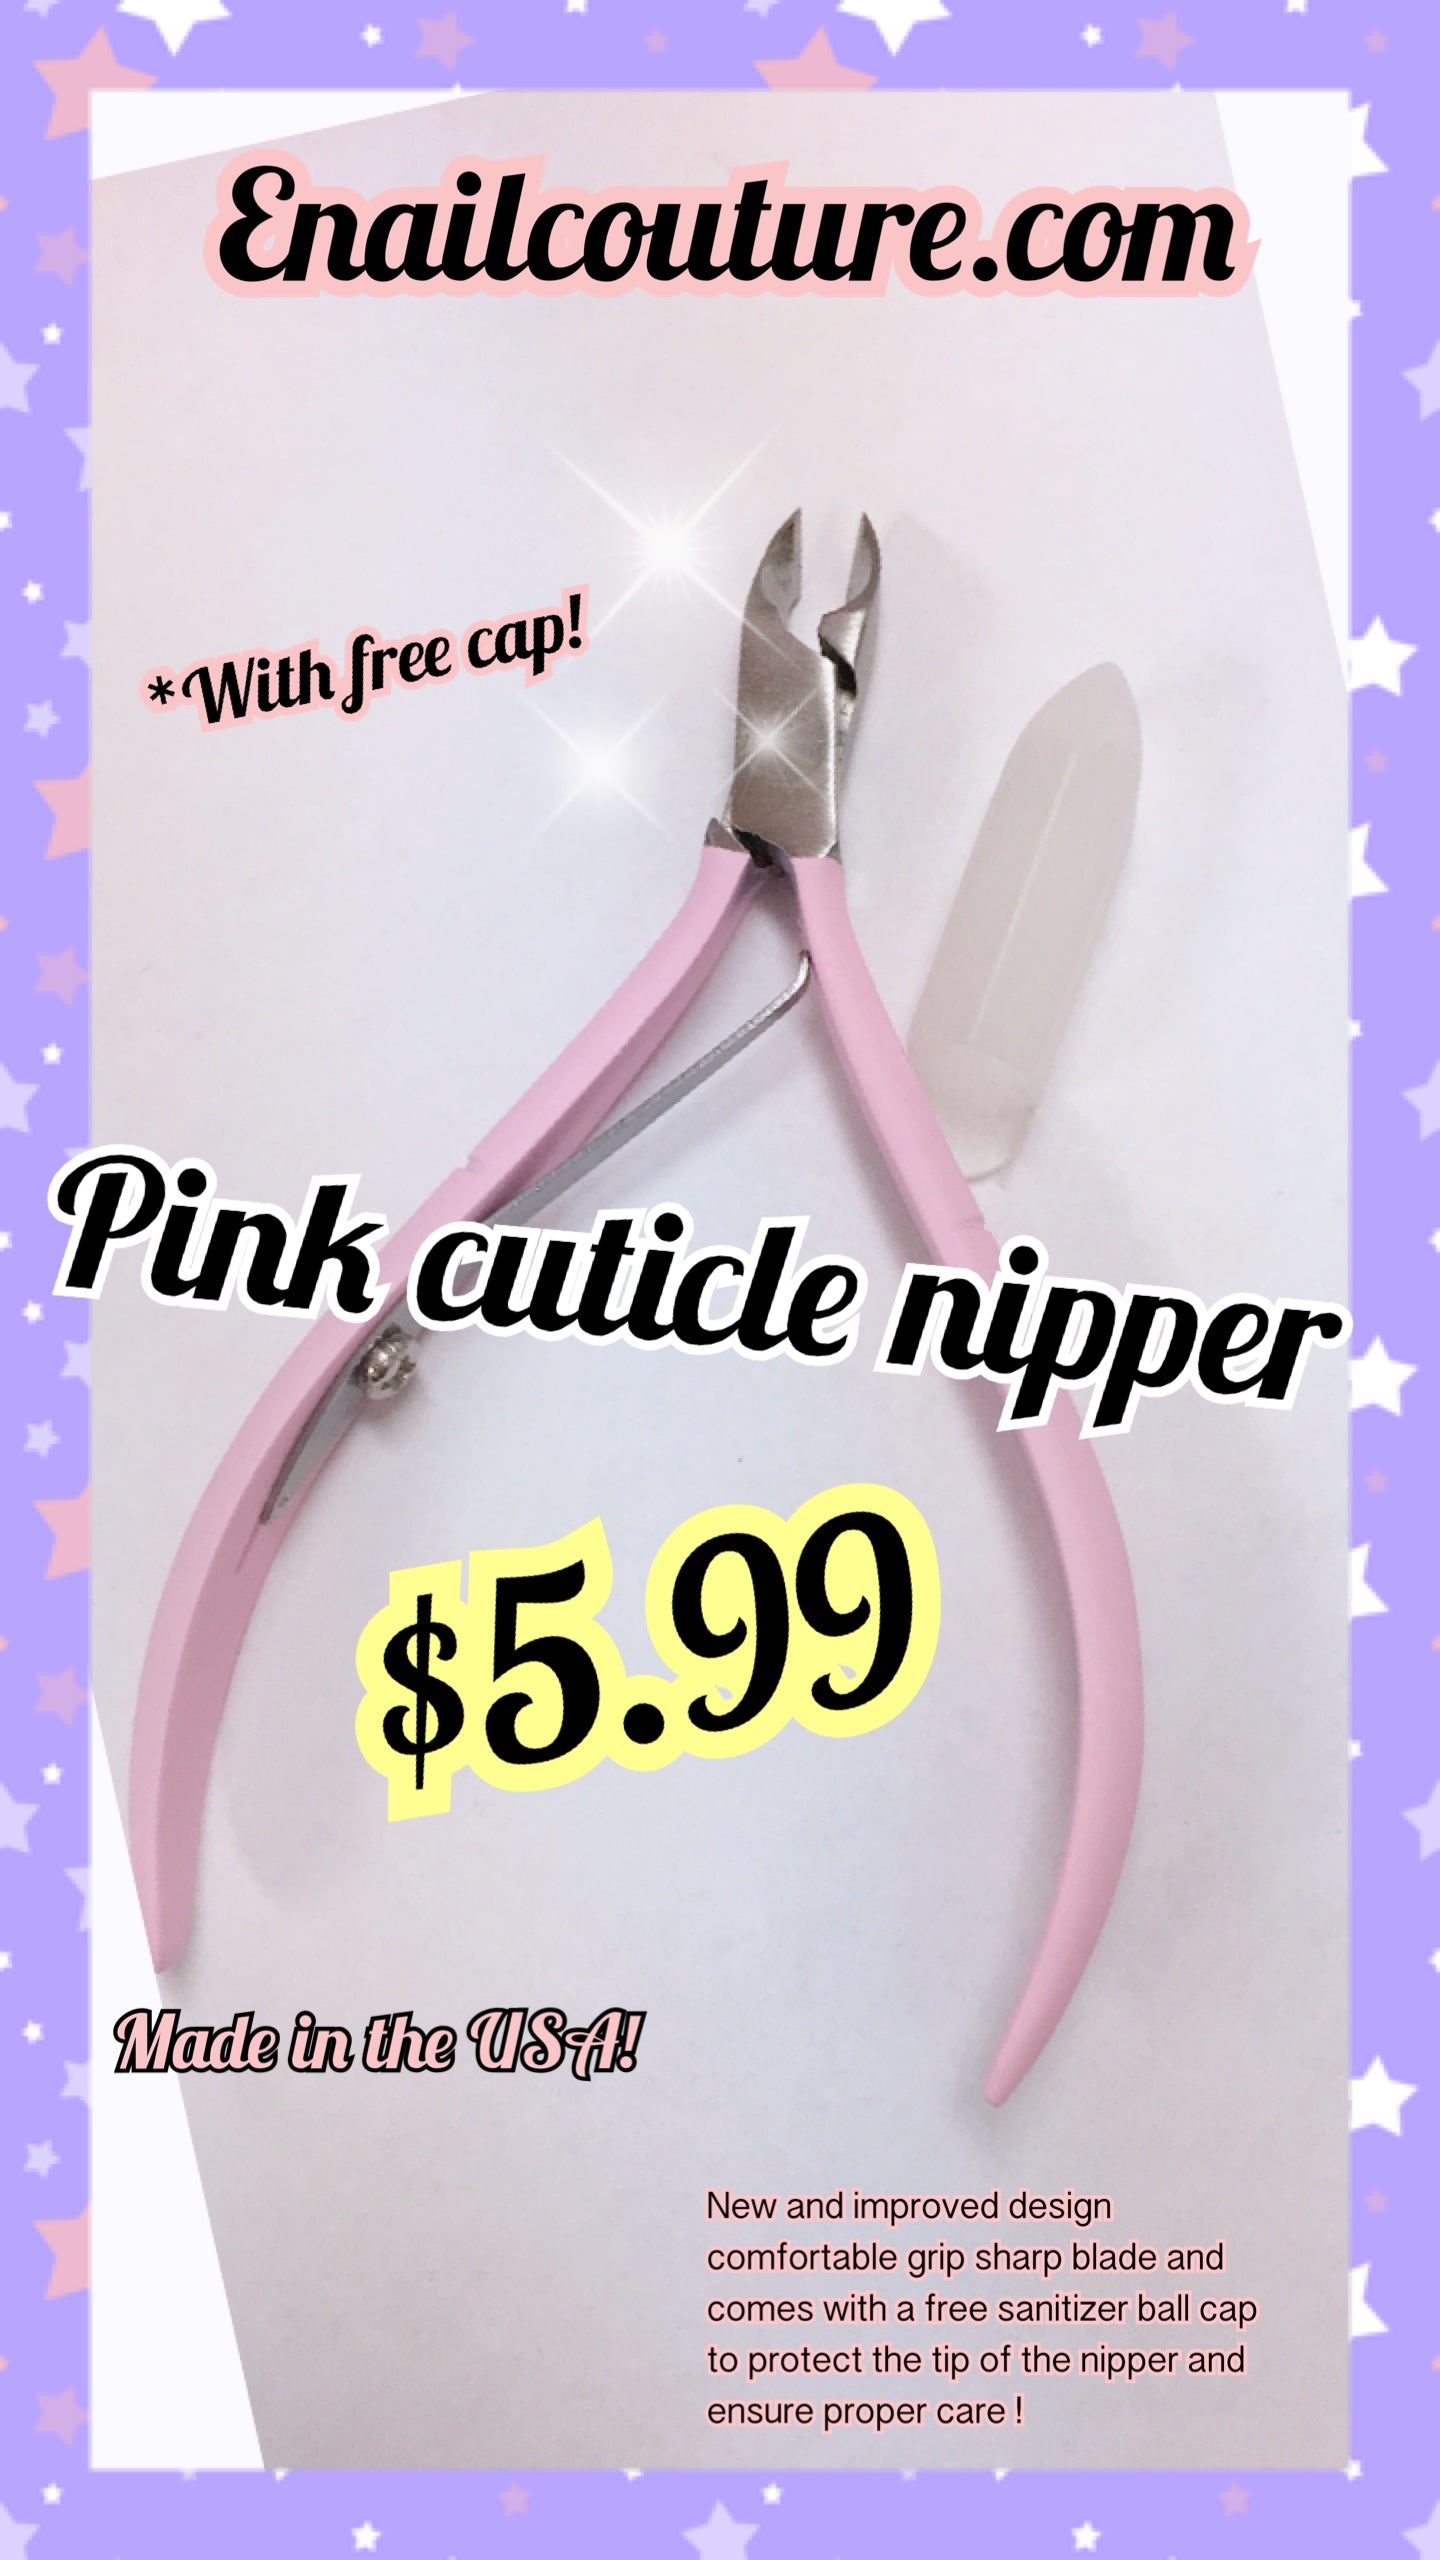 Cgull Premium Pink Scissors